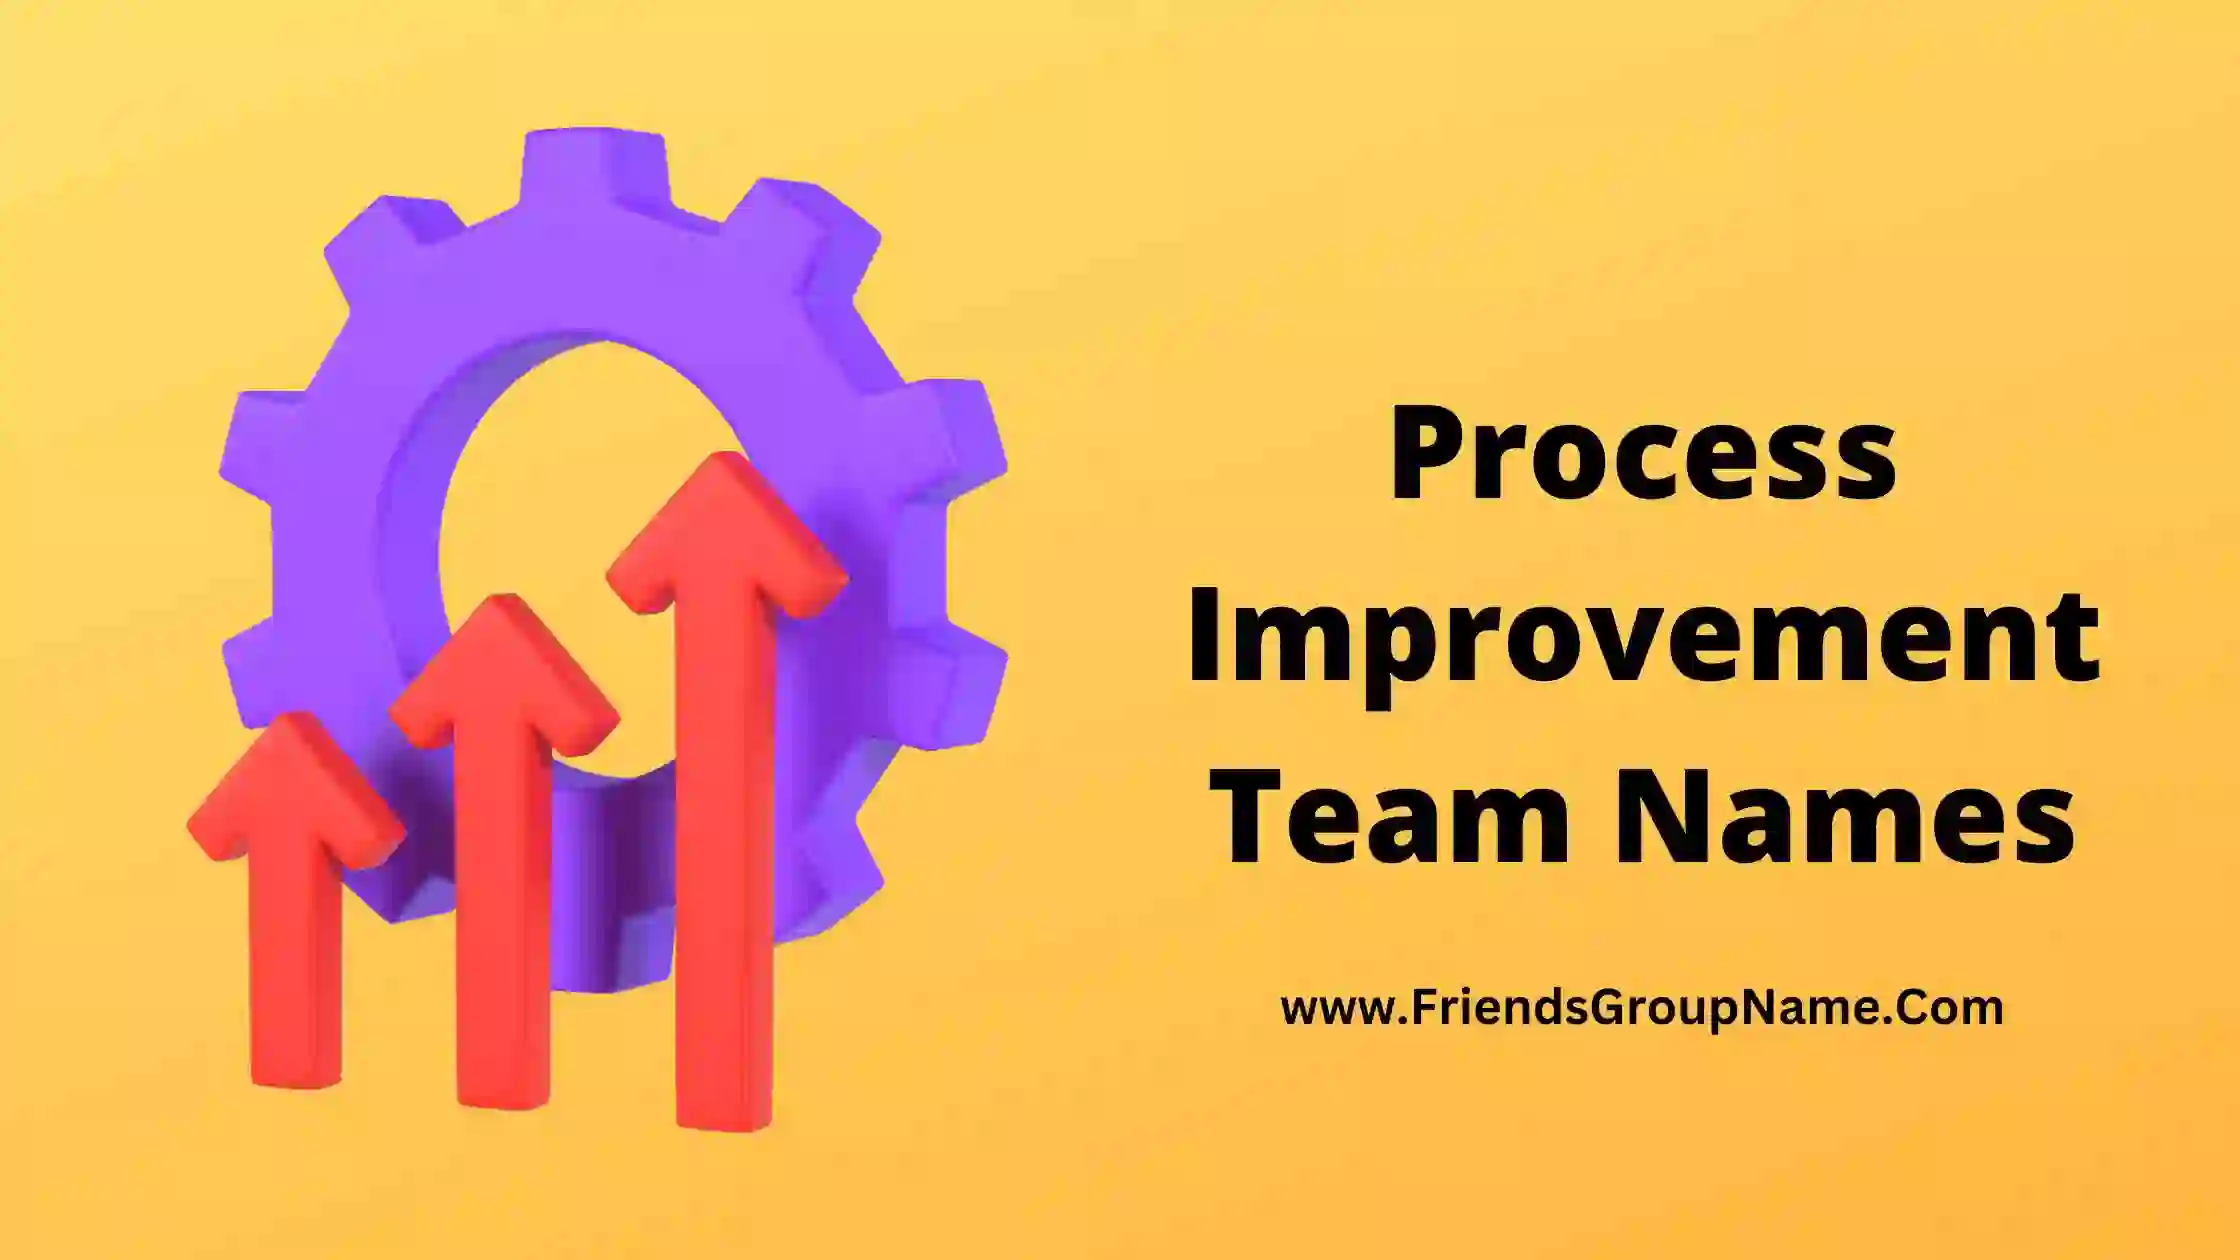 Process Improvement Team Names